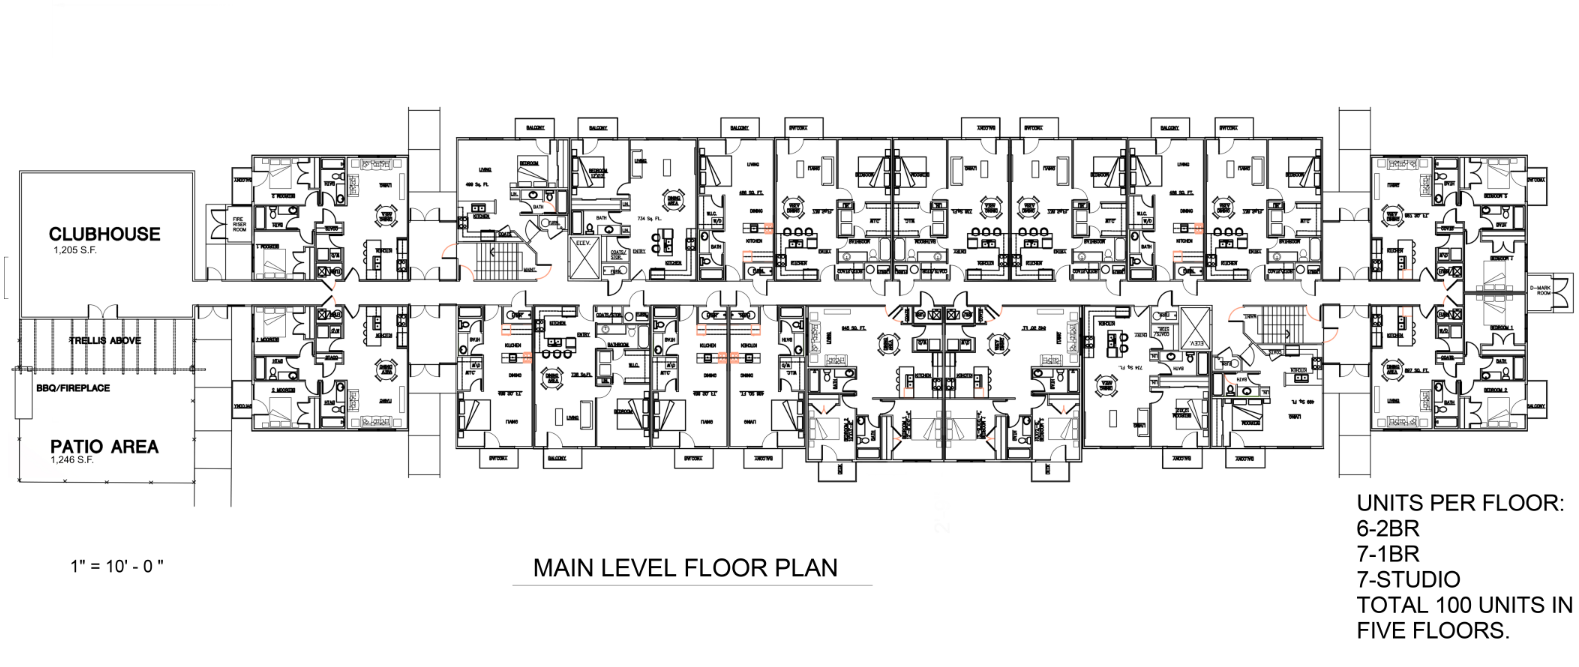 HLN floor plan